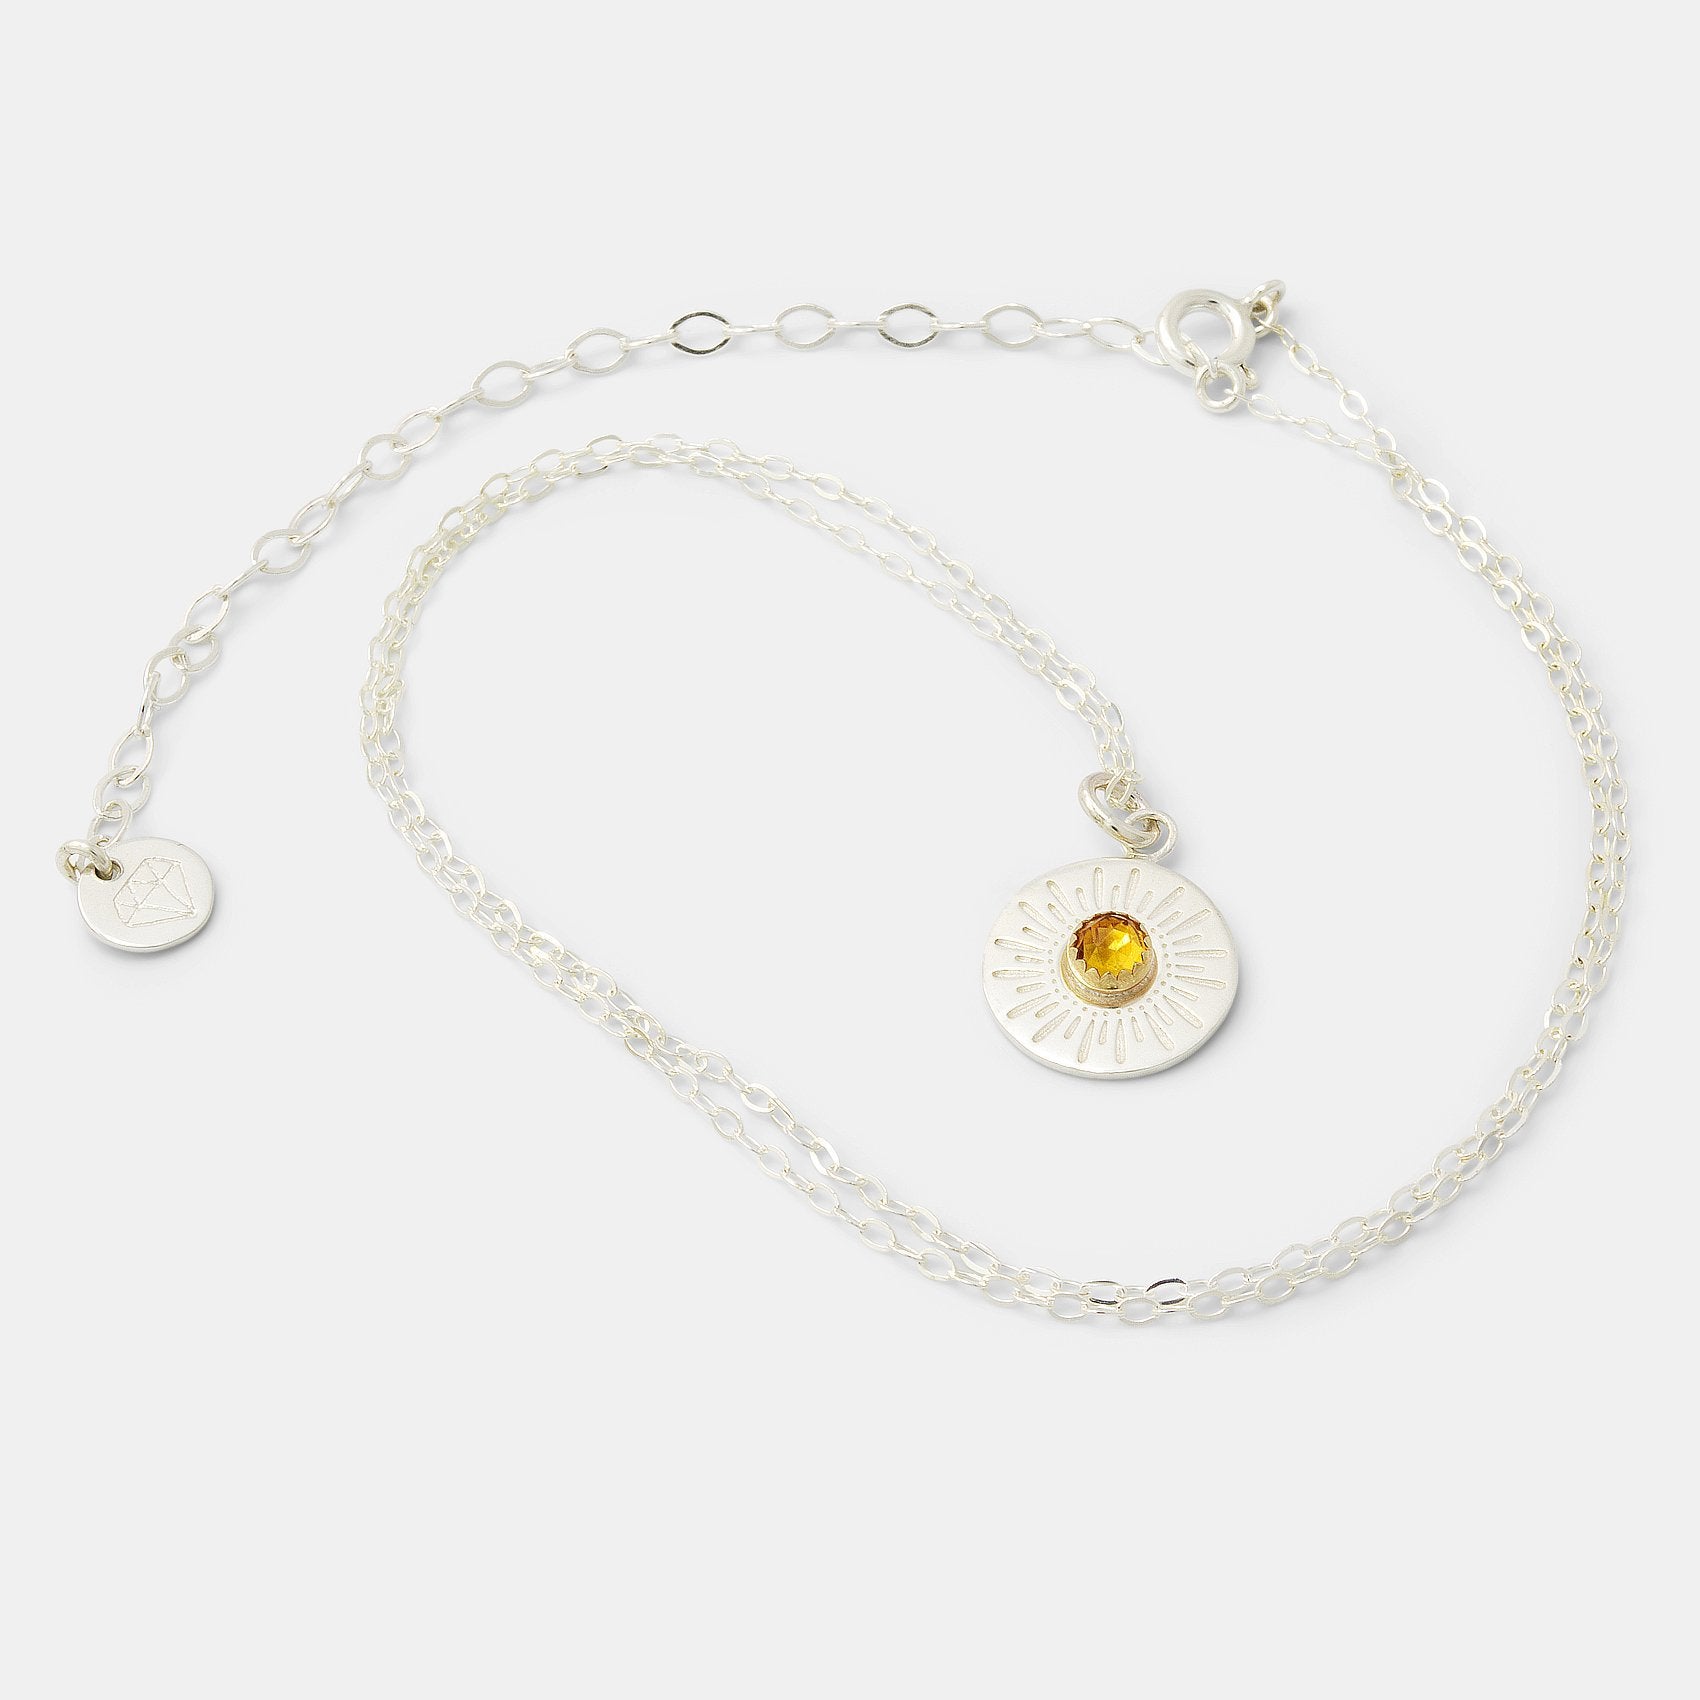 Sunburst & citrine amulet necklace - Simone Walsh Jewellery Australia